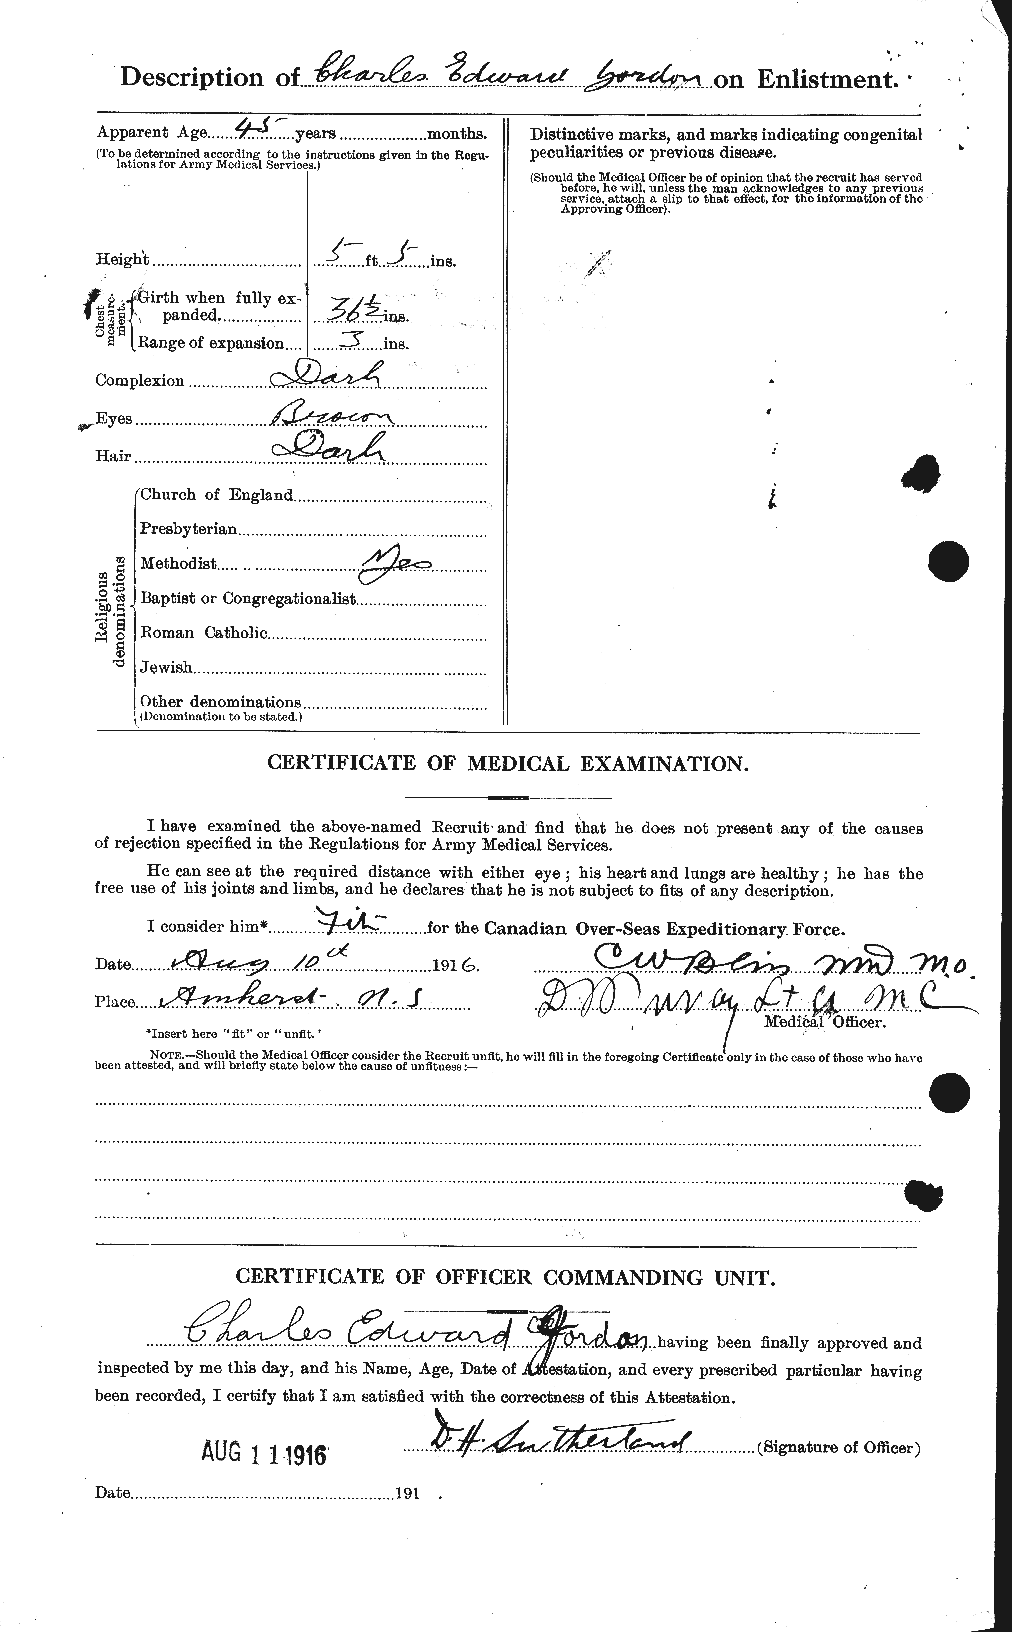 Dossiers du Personnel de la Première Guerre mondiale - CEC 424265b